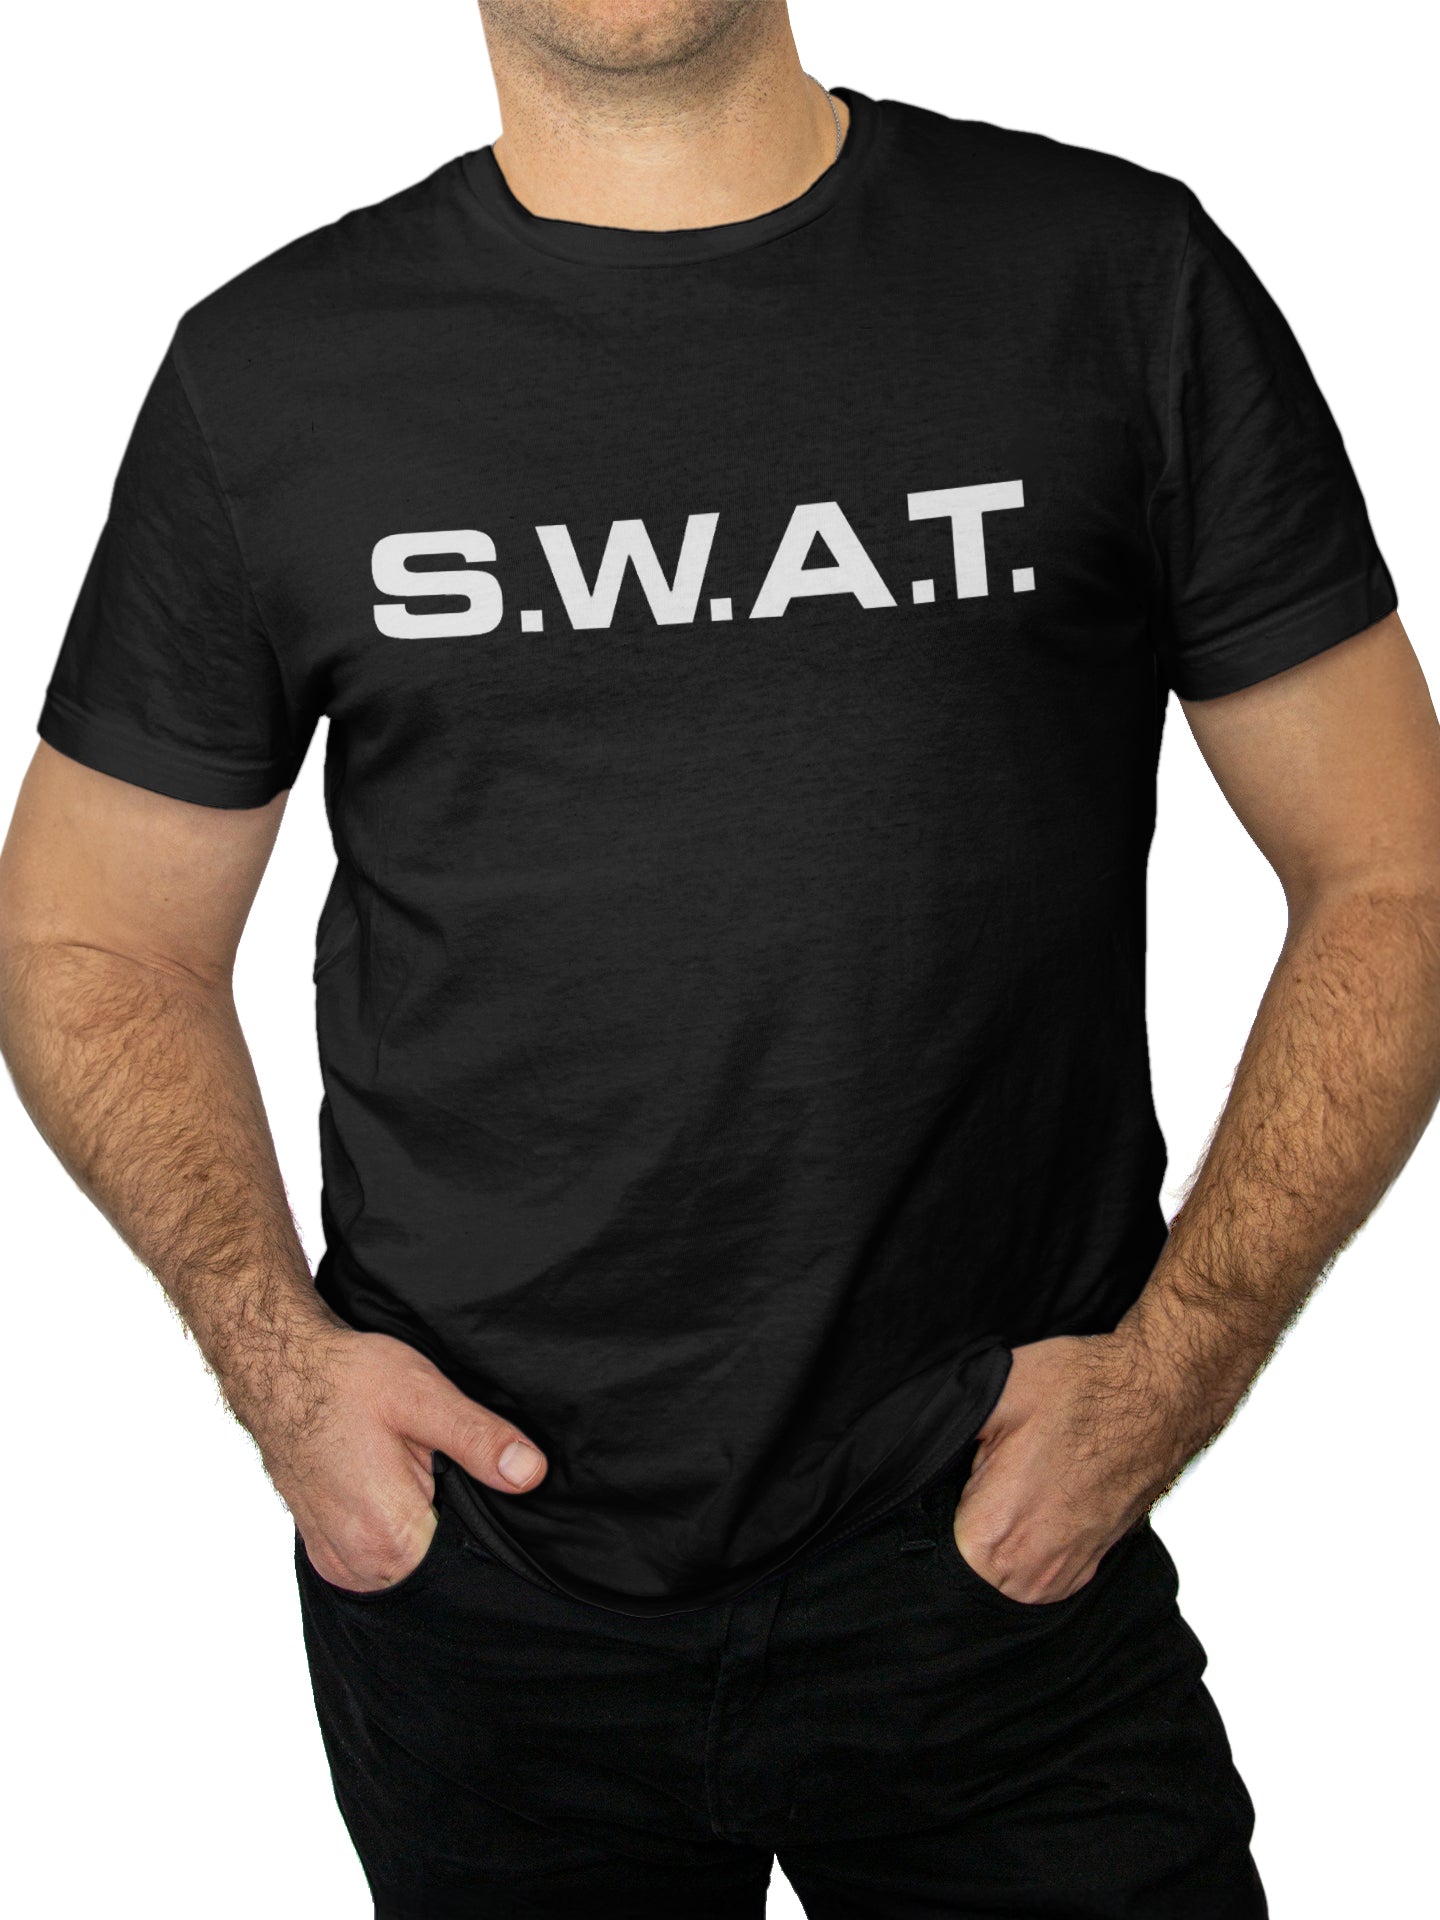 KHS T-Shirt S.W.A.T.